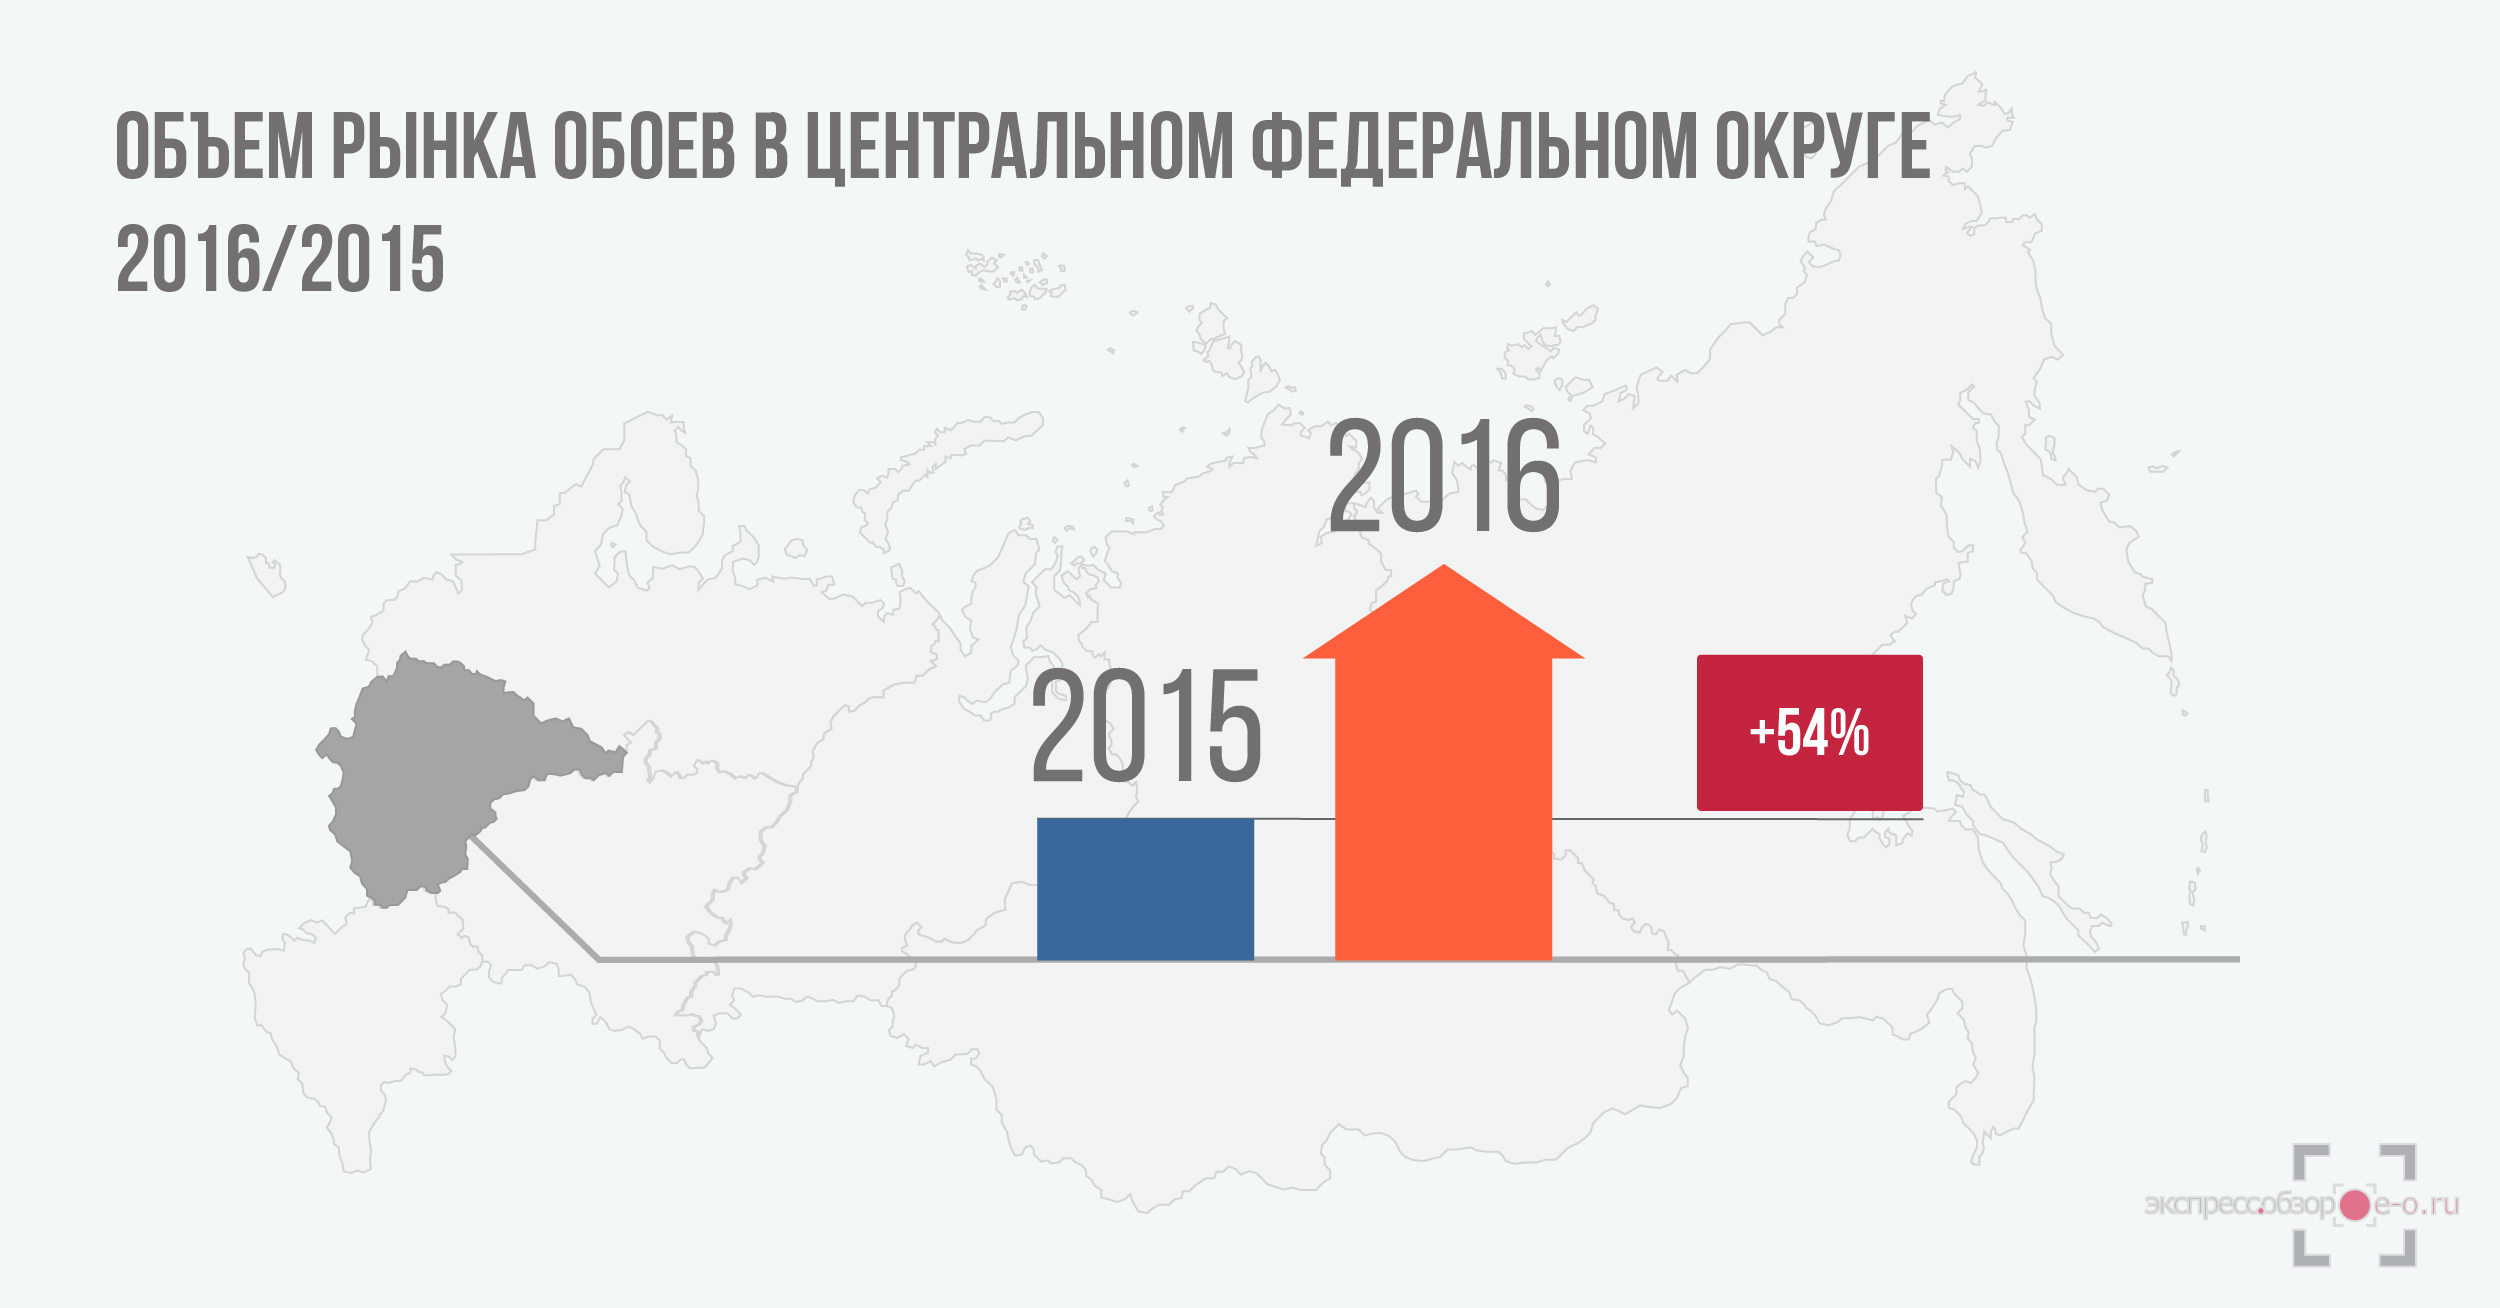 Объем рынка обоев в России в 2016 году